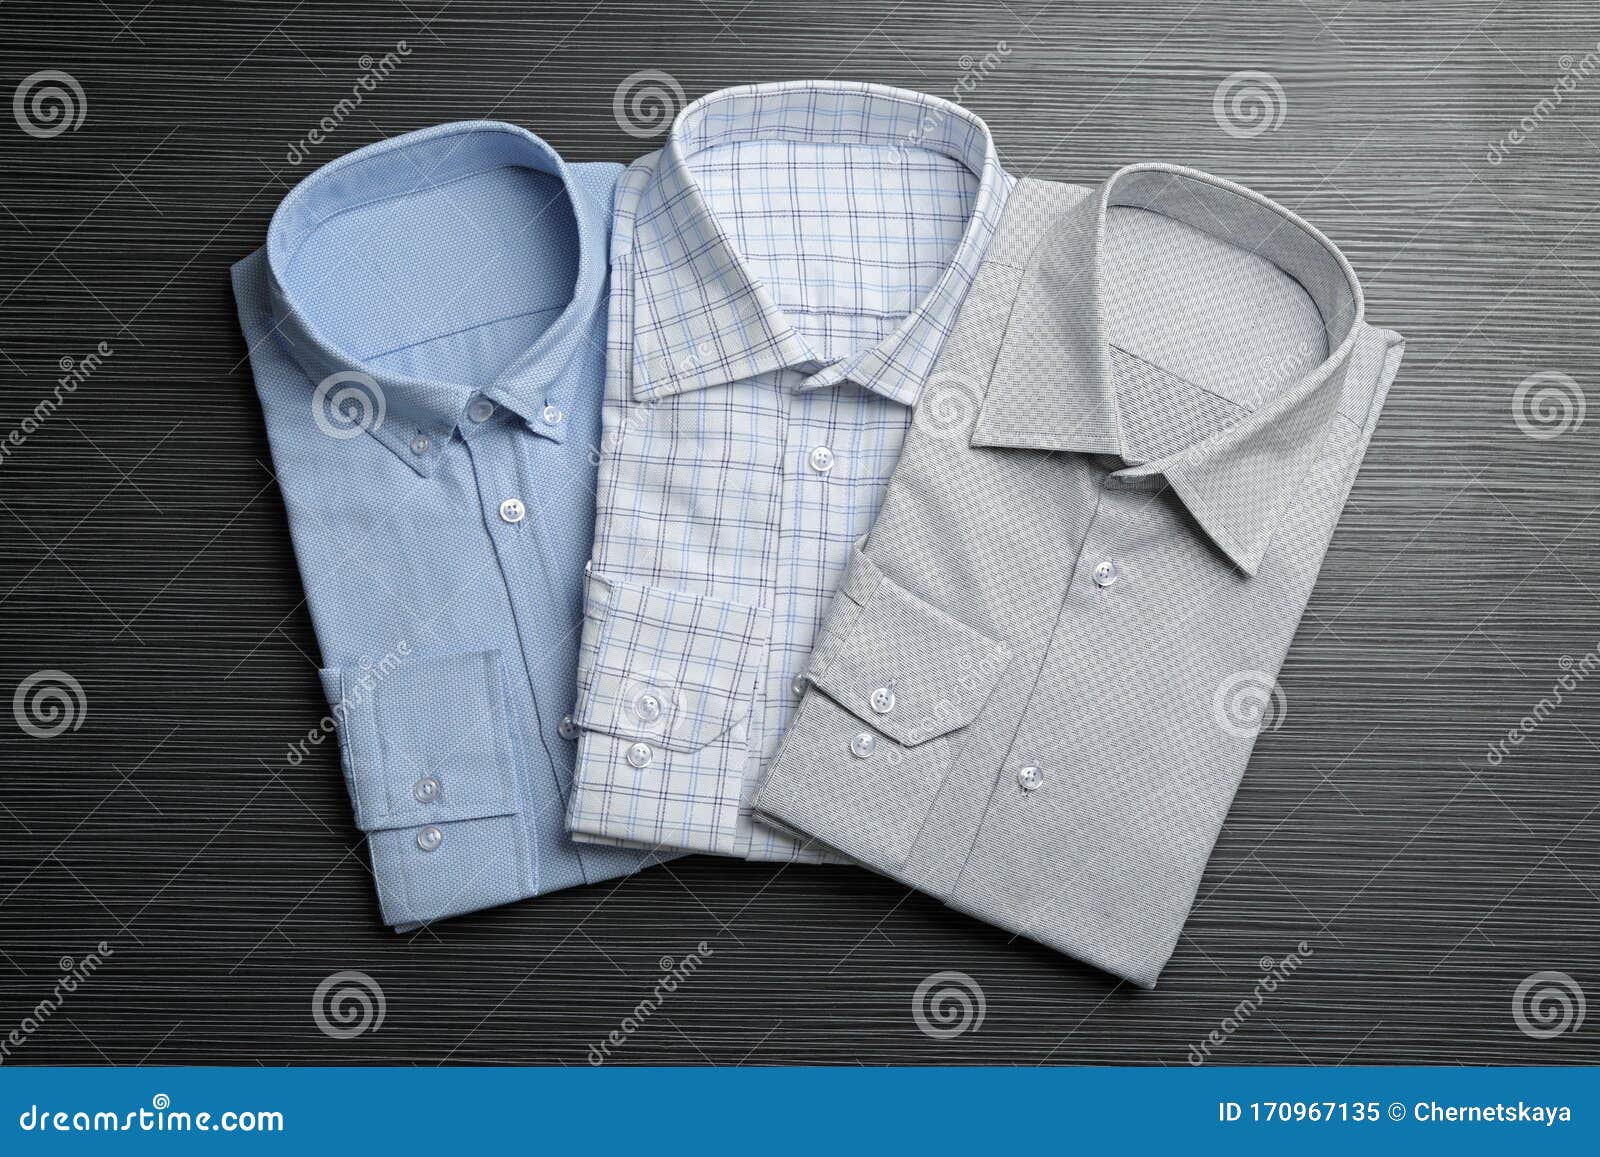 Stylish Male Shirts on Black Background Stock Image - Image of blue ...